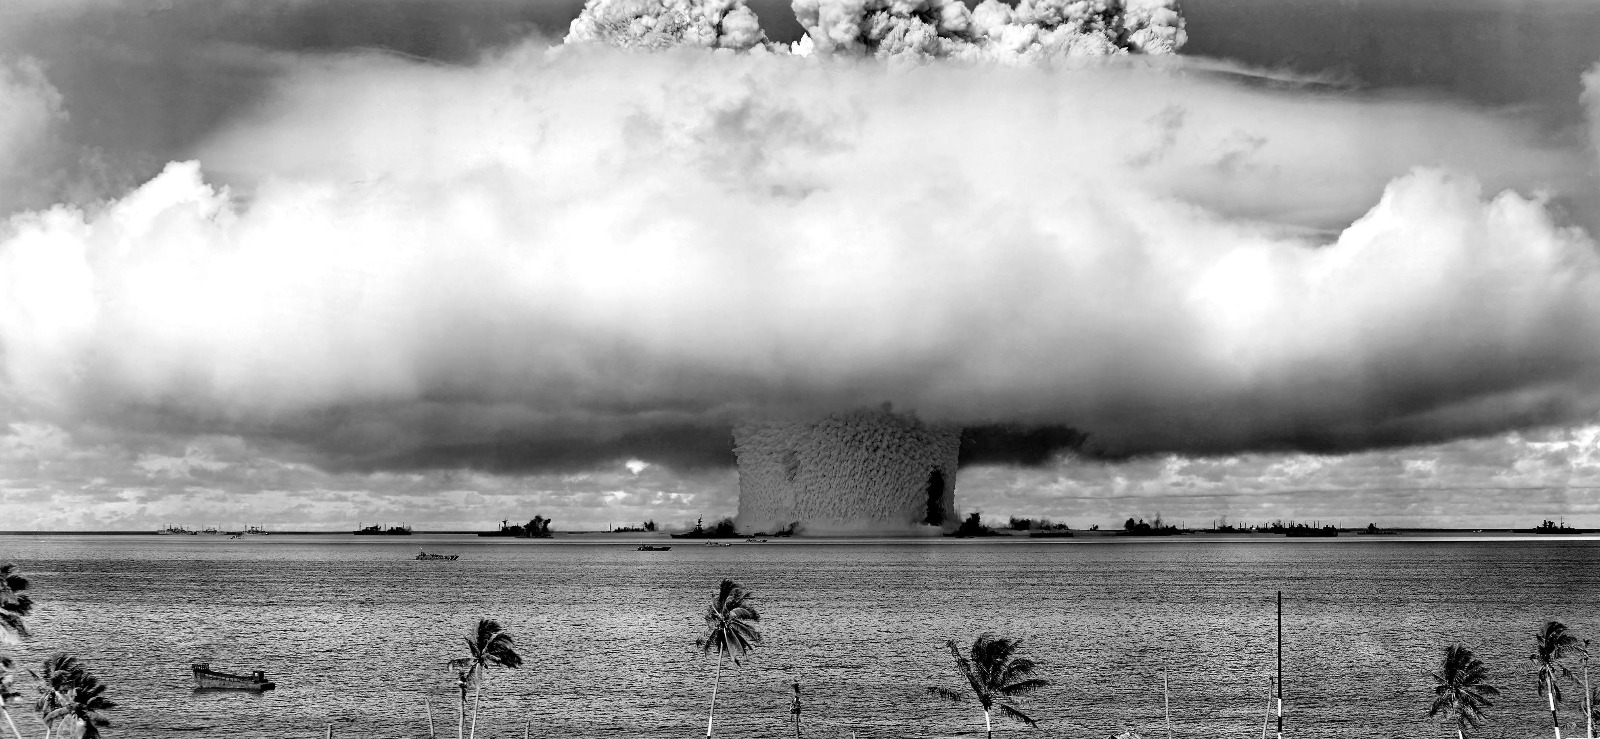 इतिहास के पन्नों में 01 मार्चः अमेरिका ने किया हाईड्रोजन बम का सफल परीक्षण, विस्फोट से कांपी मानवता